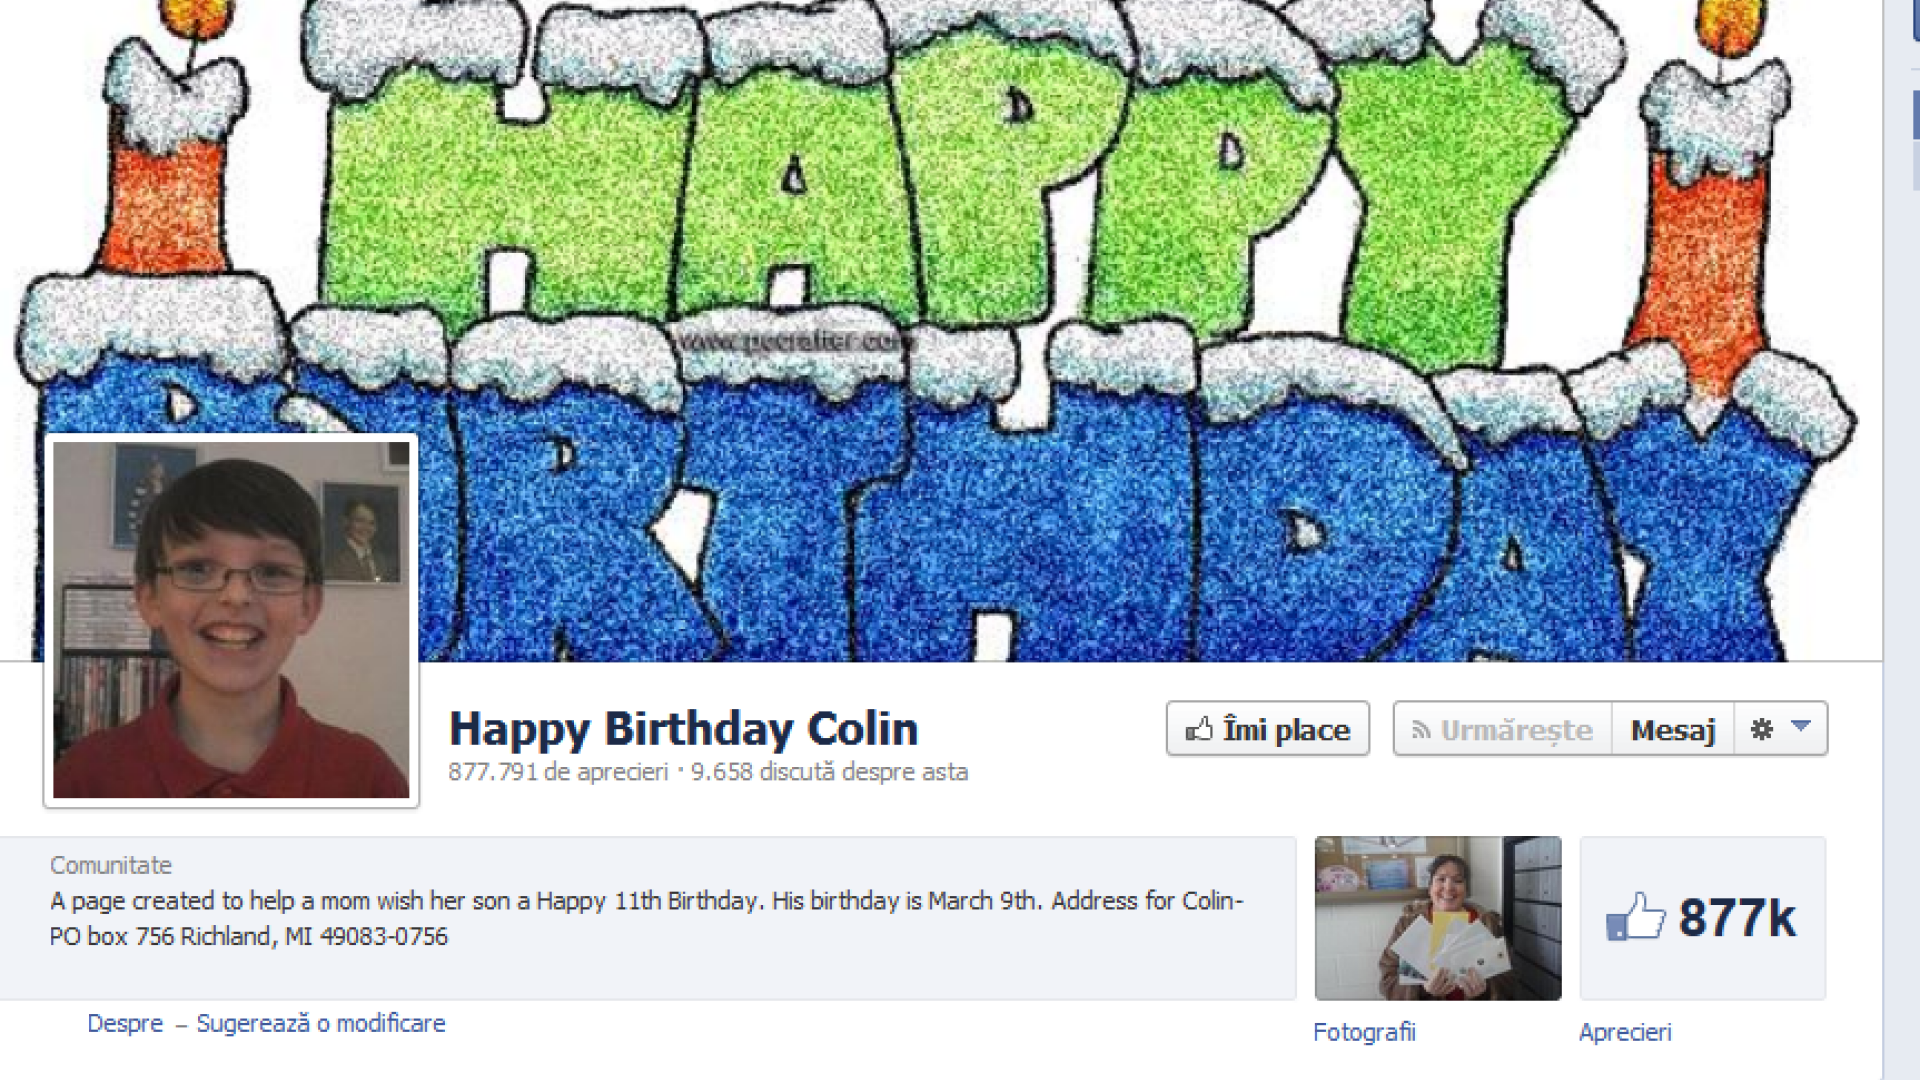 Pagina surpriza, pentru aniversarea lui Colin